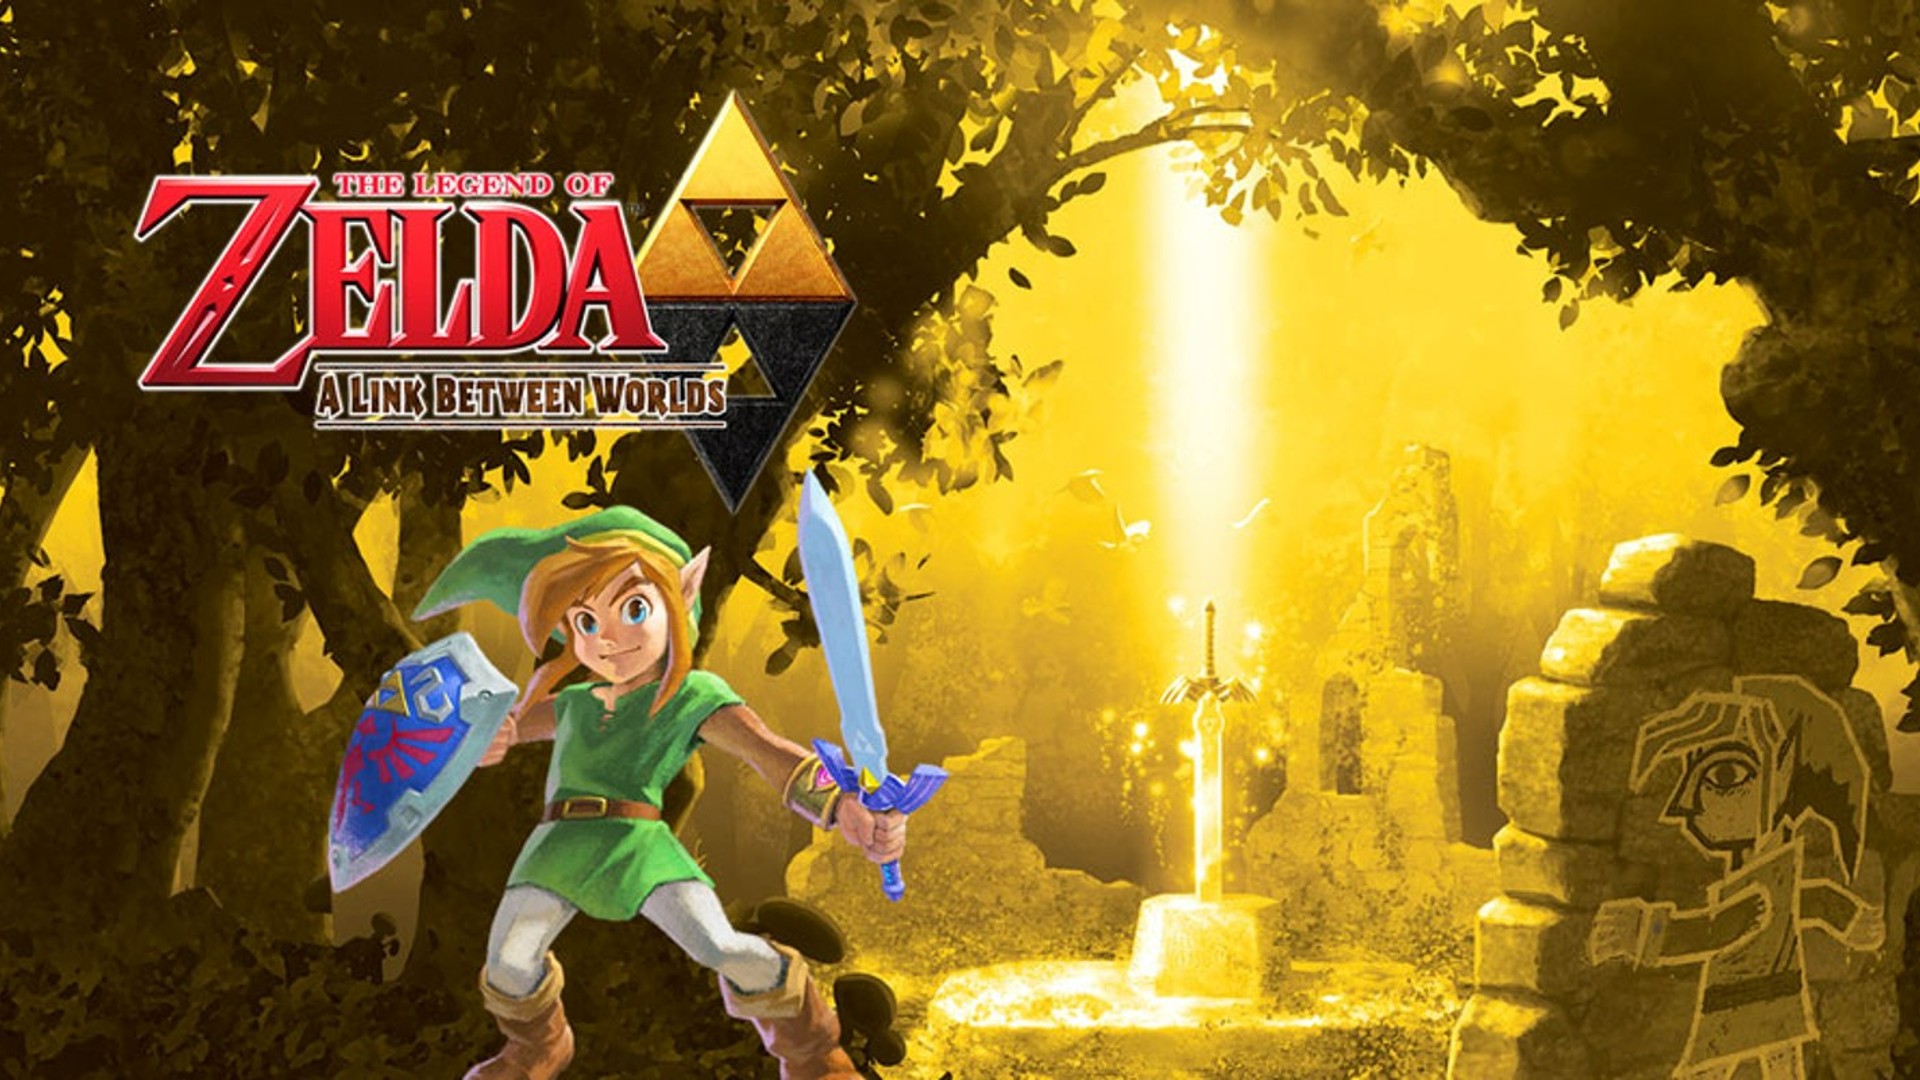 La légende de Zelda : un lien entre les mondes